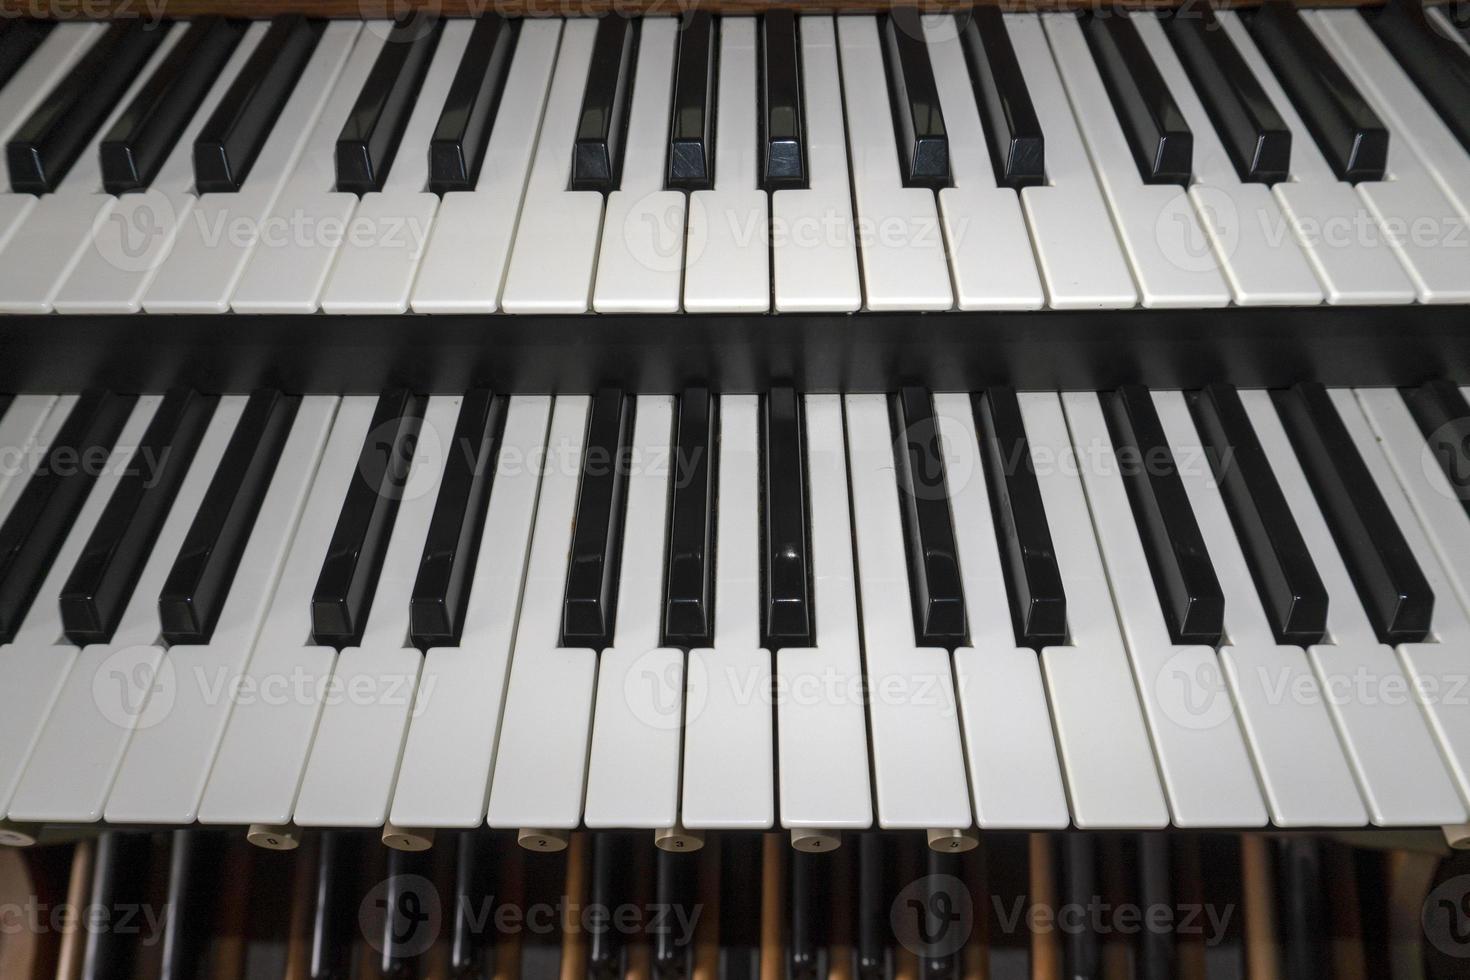 Détail du clavier double de l'orgue de l'église photo